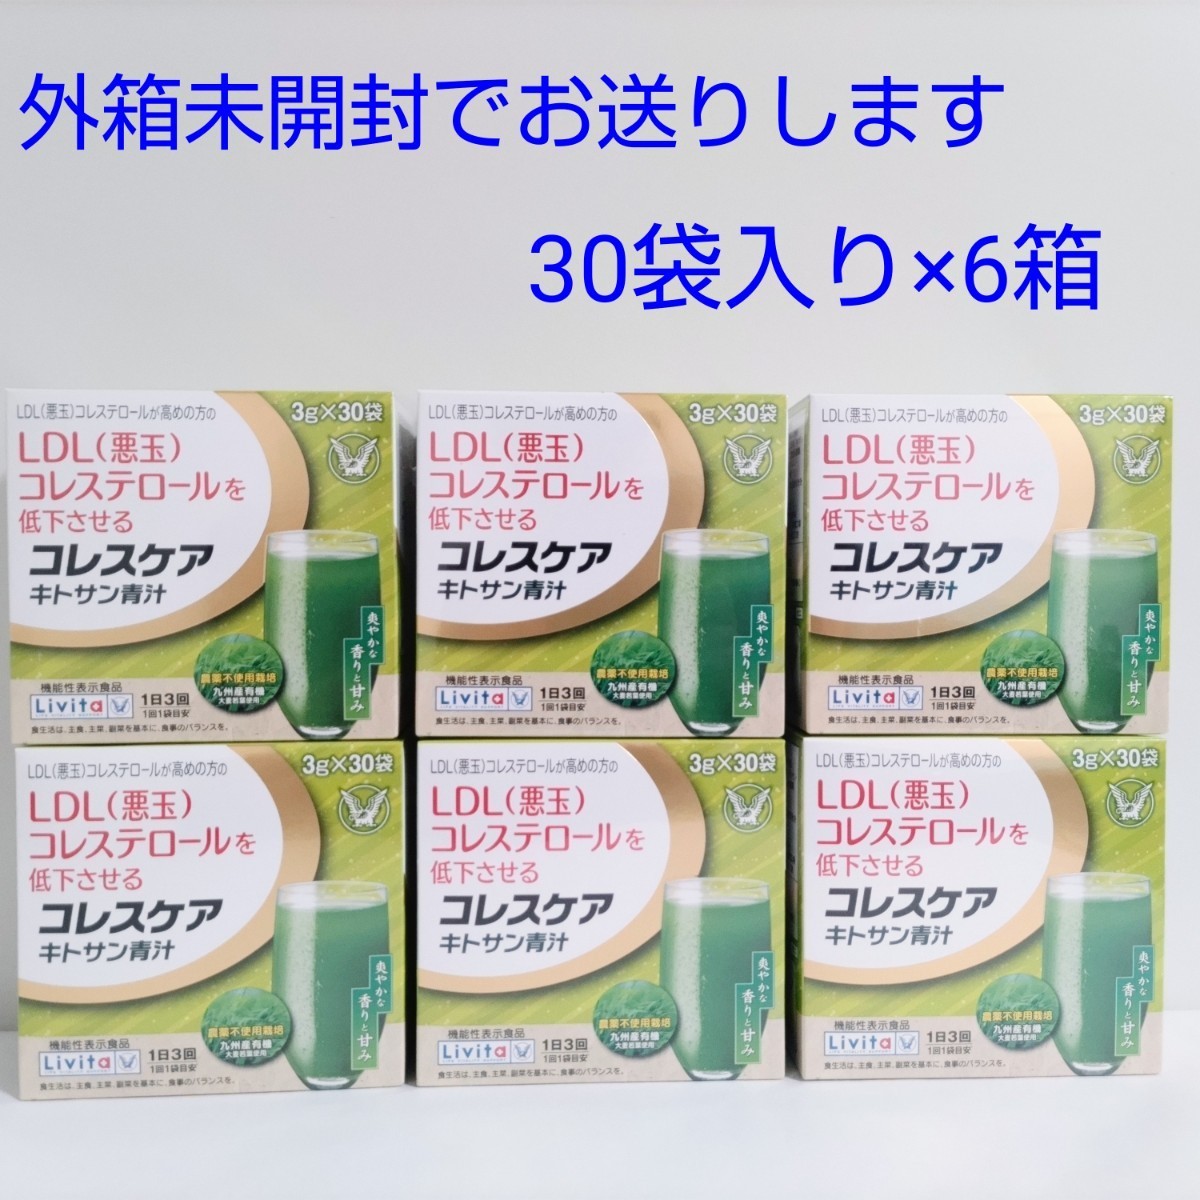 リビタ コレスケア キトサン青汁(3g*30袋入*2箱セット)